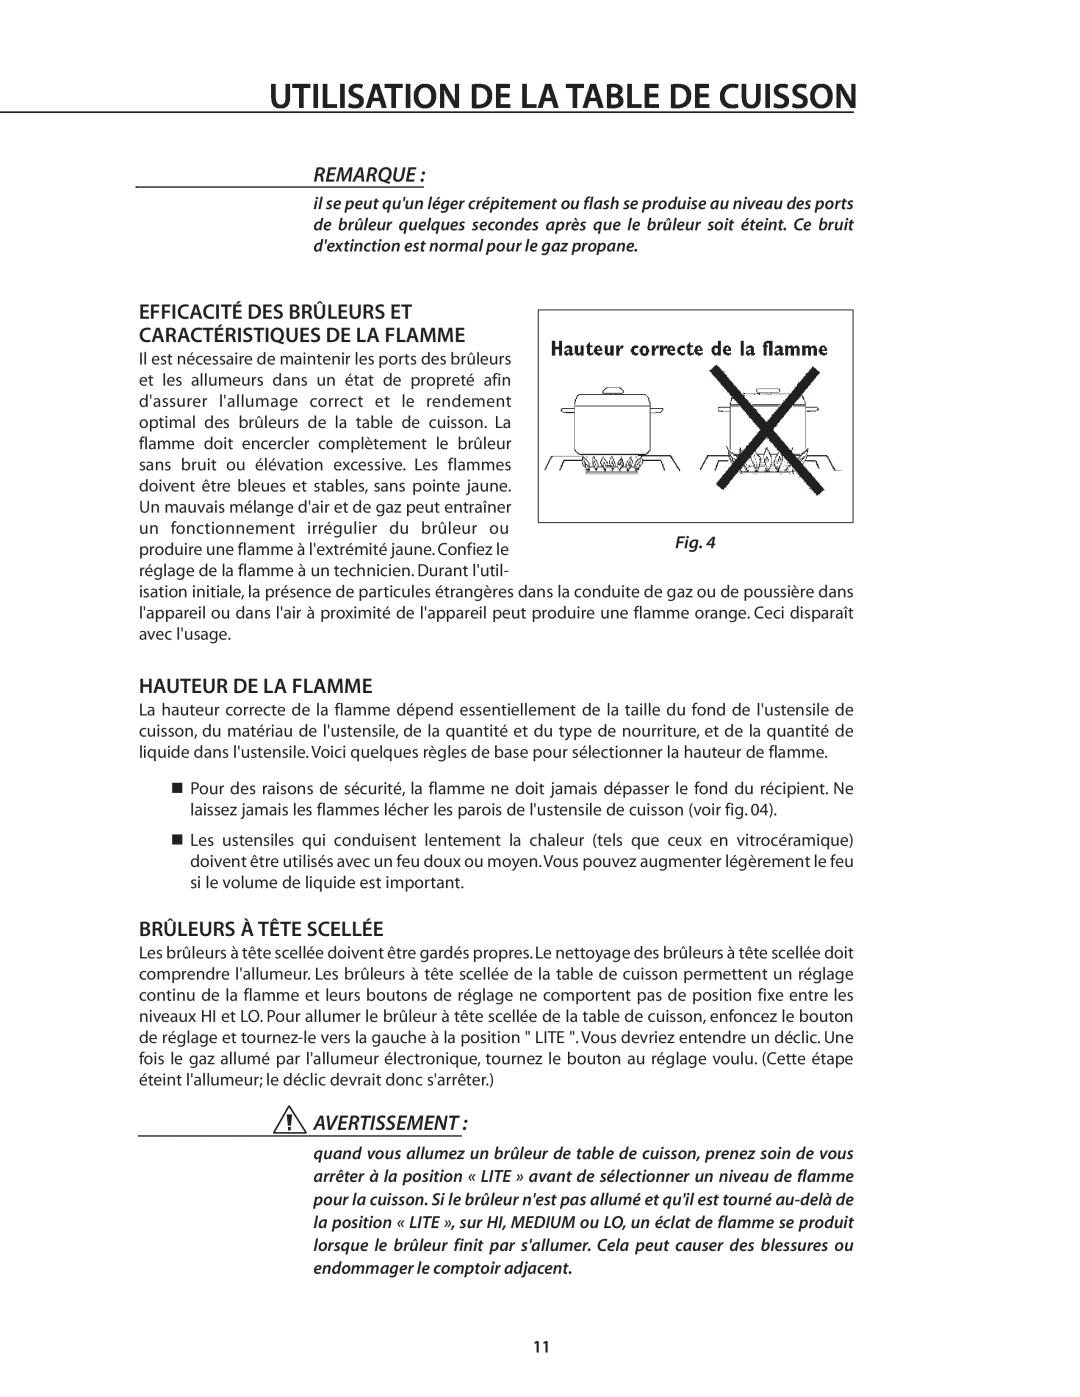 DCS RDS-305 manual Efficacité Des Brûleurs Et Caractéristiques De La Flamme, Hauteur De La Flamme, Brûleurs À Tête Scellée 